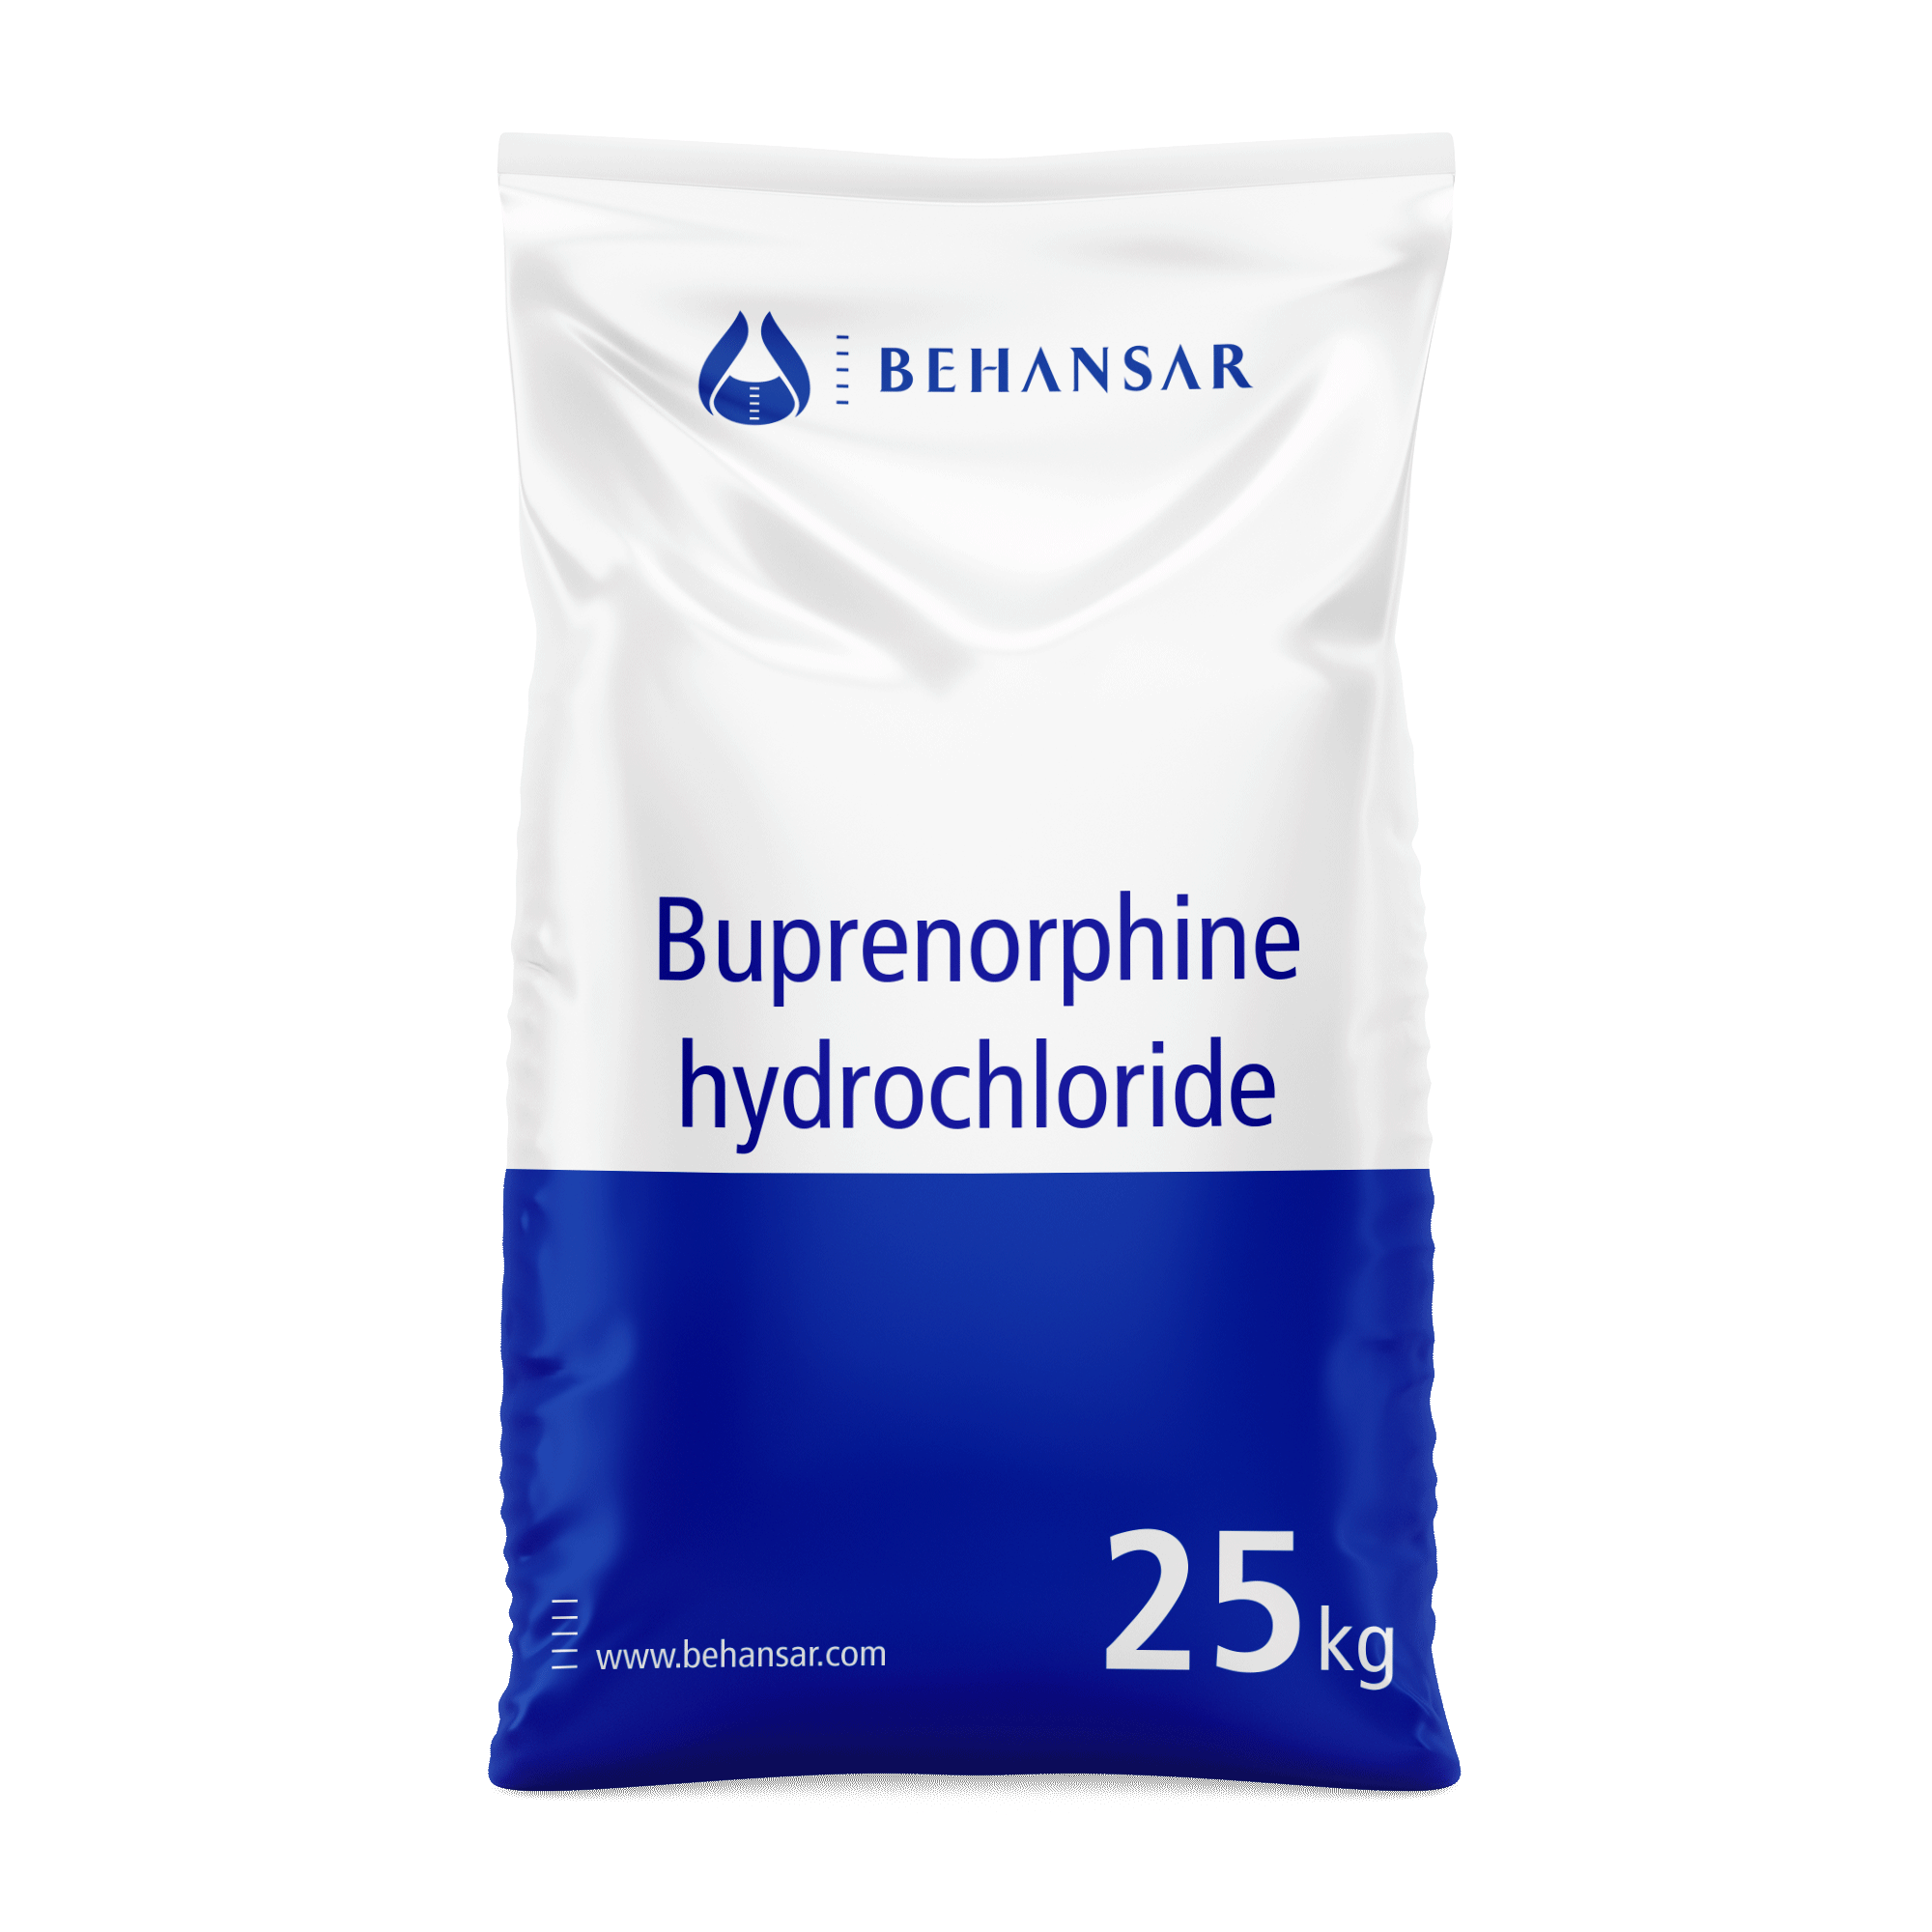 بوپرونورفین هیدروکلراید یکی از تولیدات شرکت بهانسار است